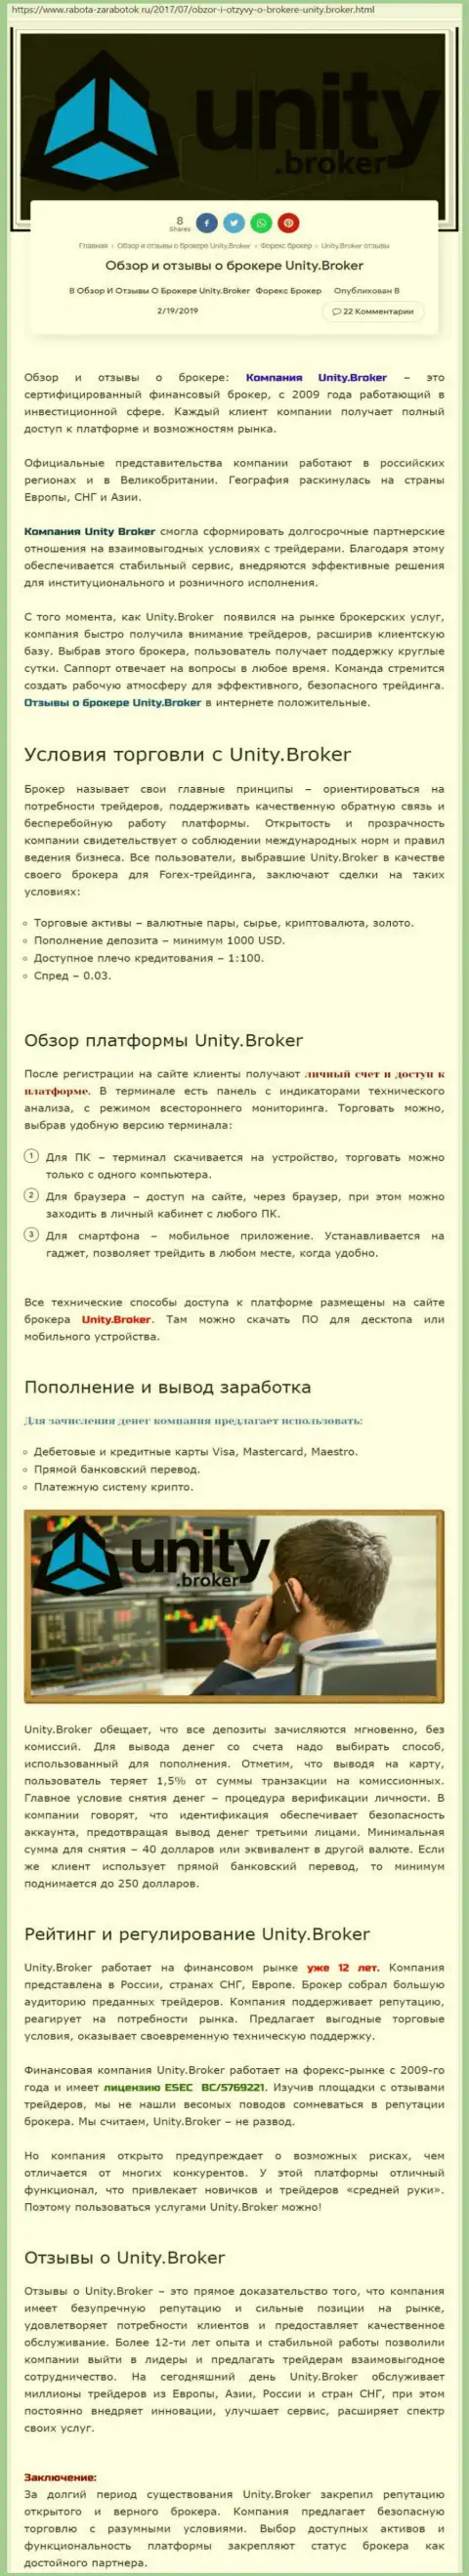 Обзорная инфа ФОРЕКС дилера Unity Broker на сайте Rabota-Zarabotok Ru